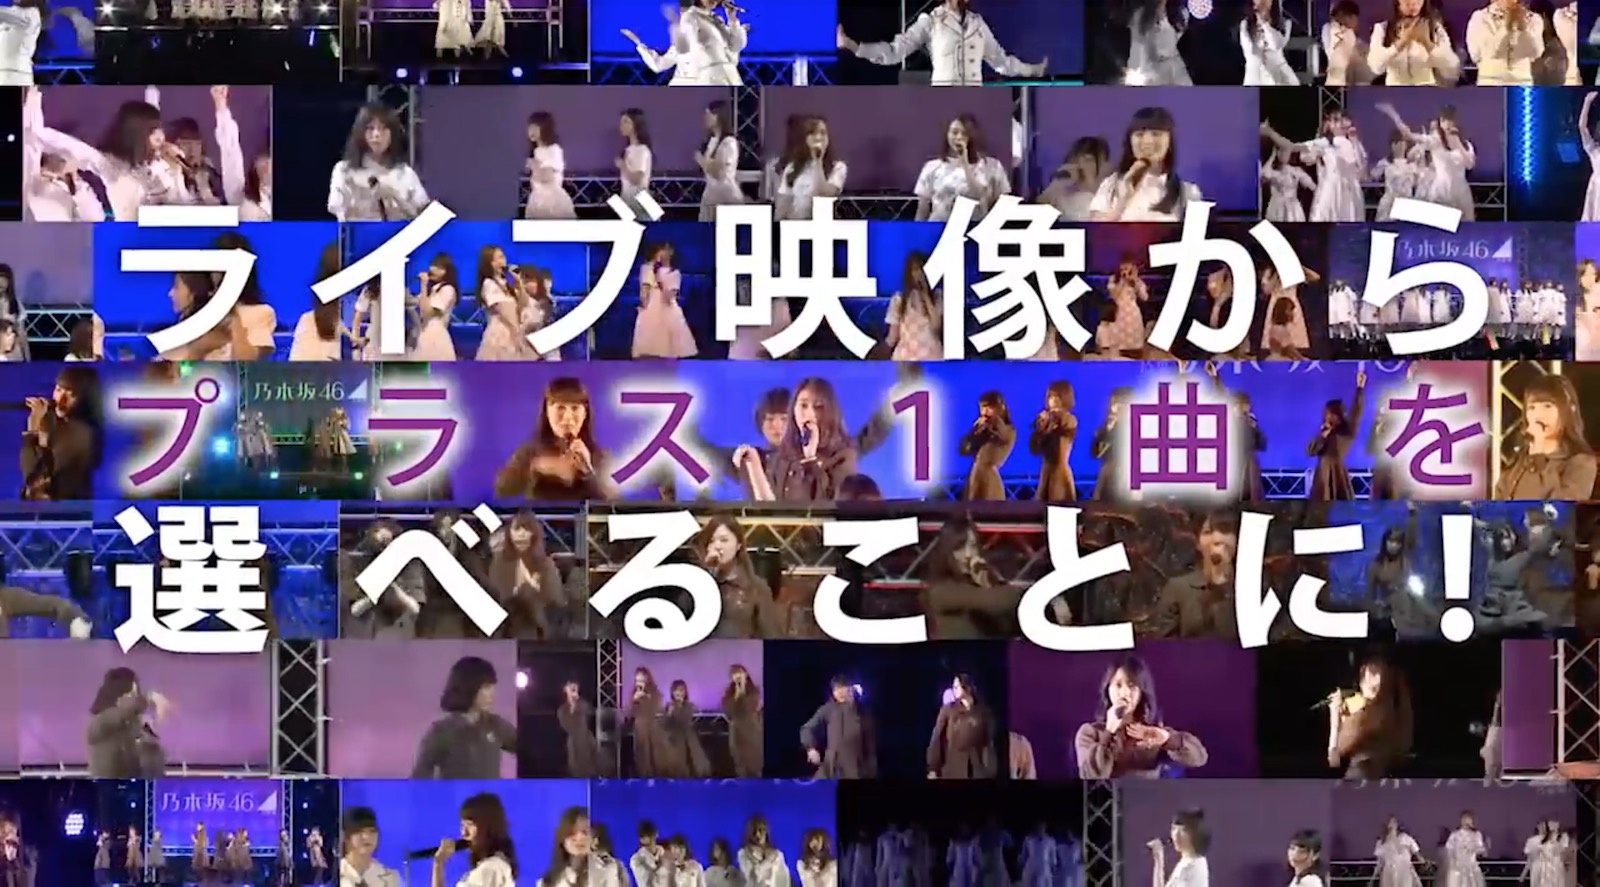 乃木坂46×PROJECT REVIEW 20th シングル『シンクロニシティ』発売記念 全国握手会 特別企画